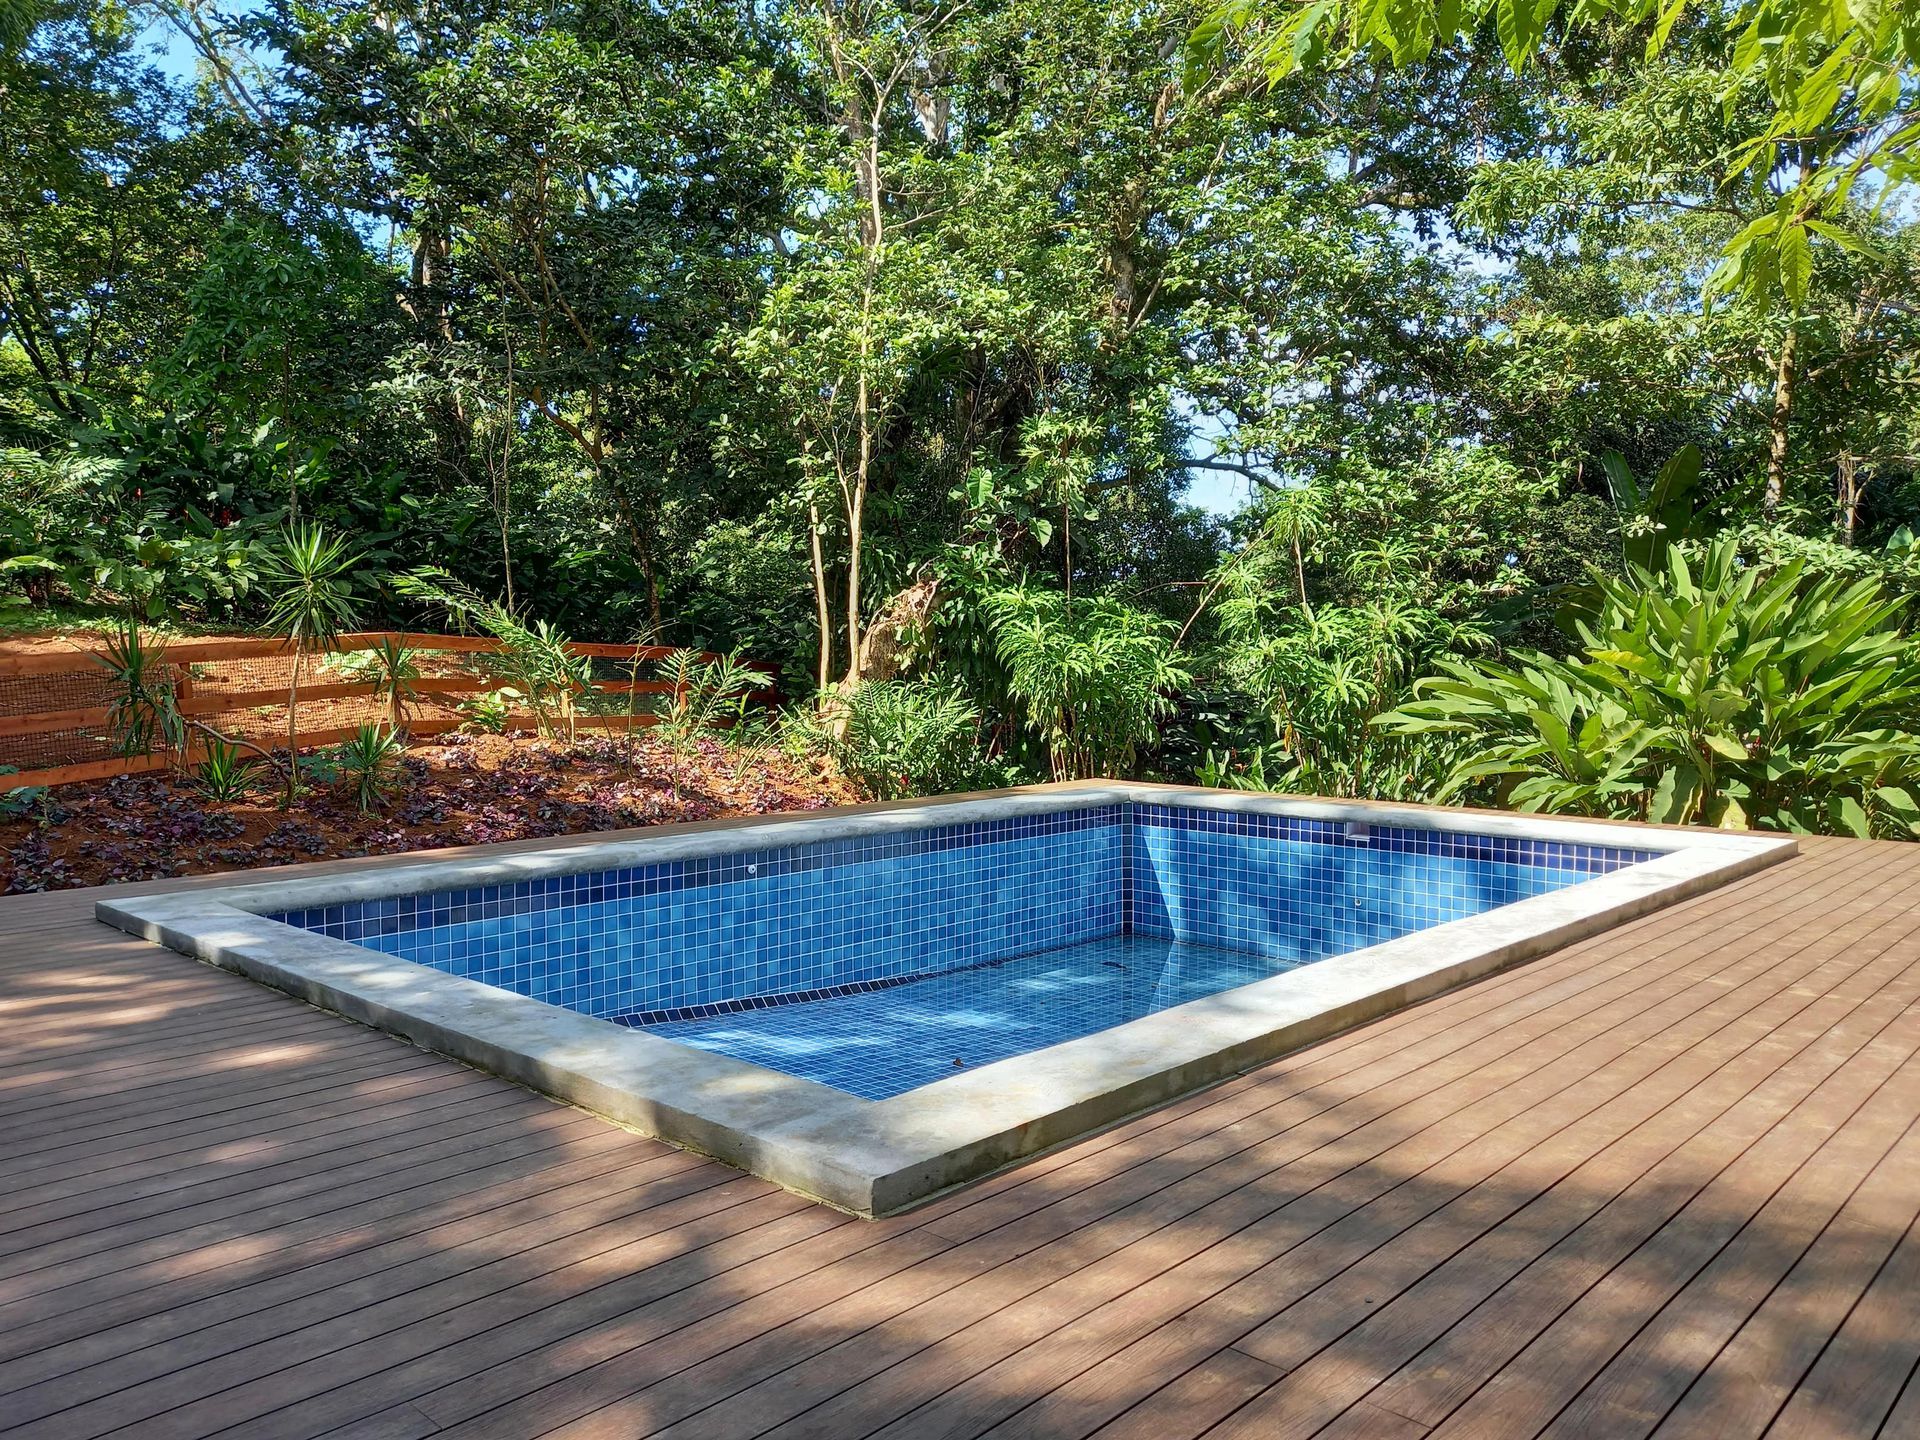 Tropical Villa for Sale in Bocas del Toro, Panama | Private Villa in Botanical Gardens